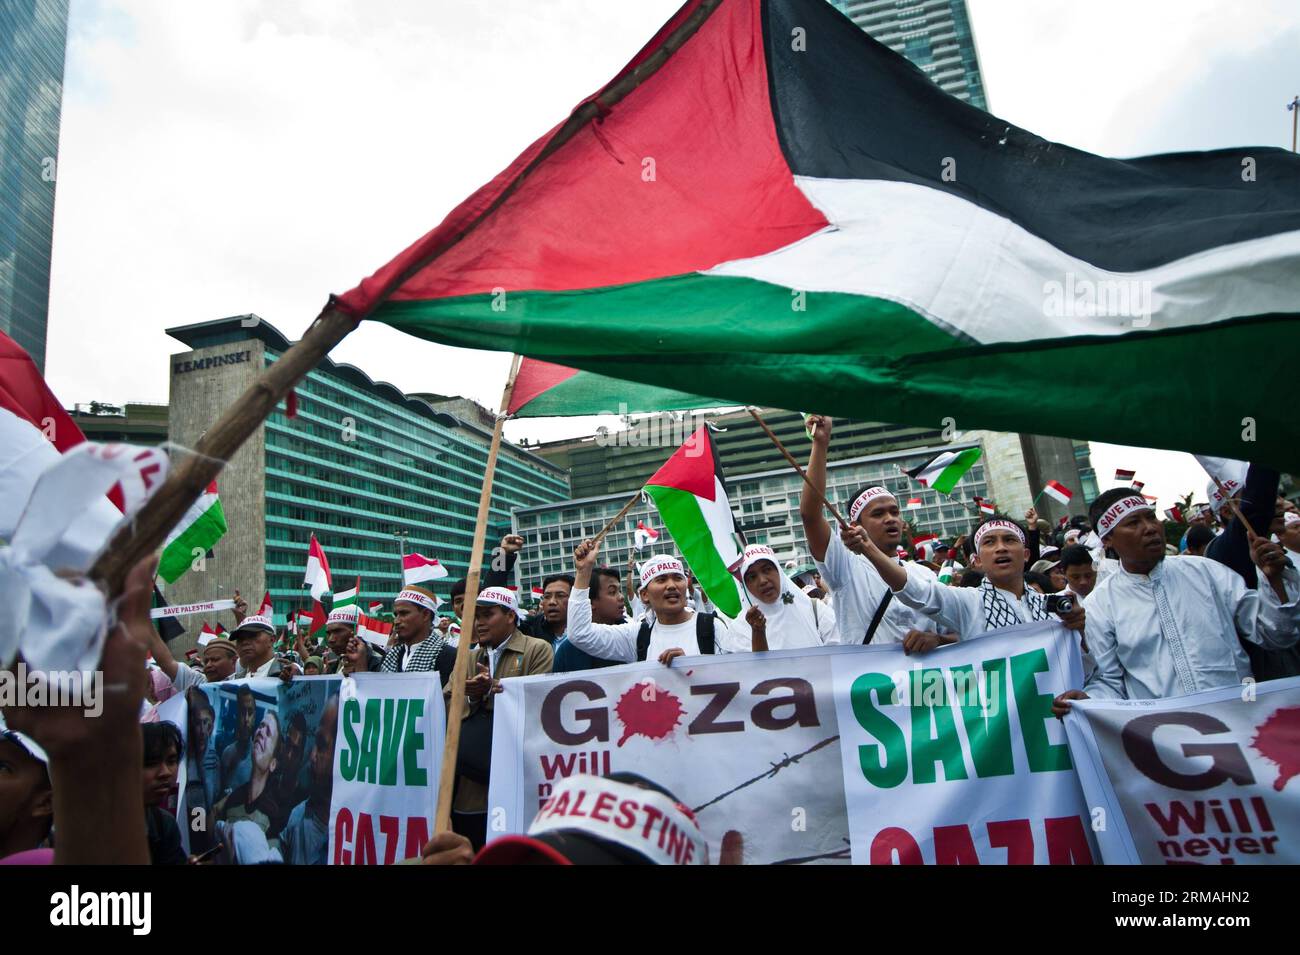 (140711) -- GIACARTA, 11 luglio 2014 (Xinhua) -- messa del popolo indonesiano solidarietà per la Palestina grida slogan durante una manifestazione per sostenere e salvare la Palestina a Giacarta, Indonesia, 11 luglio 2014. (Xinhua/VeriSanovri) INDONESIA-GIACARTA-PALESTINA SOLIDARIETÀ-RALLY PUBLICATIONxNOTxINxCHN Giacarta 11 luglio 2014 XINHUA messa dalle celebrità indonesiane solidarietà per la Palestina slogan di grida durante un Rally per sostenere e salvare la Palestina a Giacarta Indonesia 11 luglio 2014 XINHUA Indonesia Giacarta Palestina solidarietà Rally PUBLICATIONXNOTXINXCHN Foto Stock